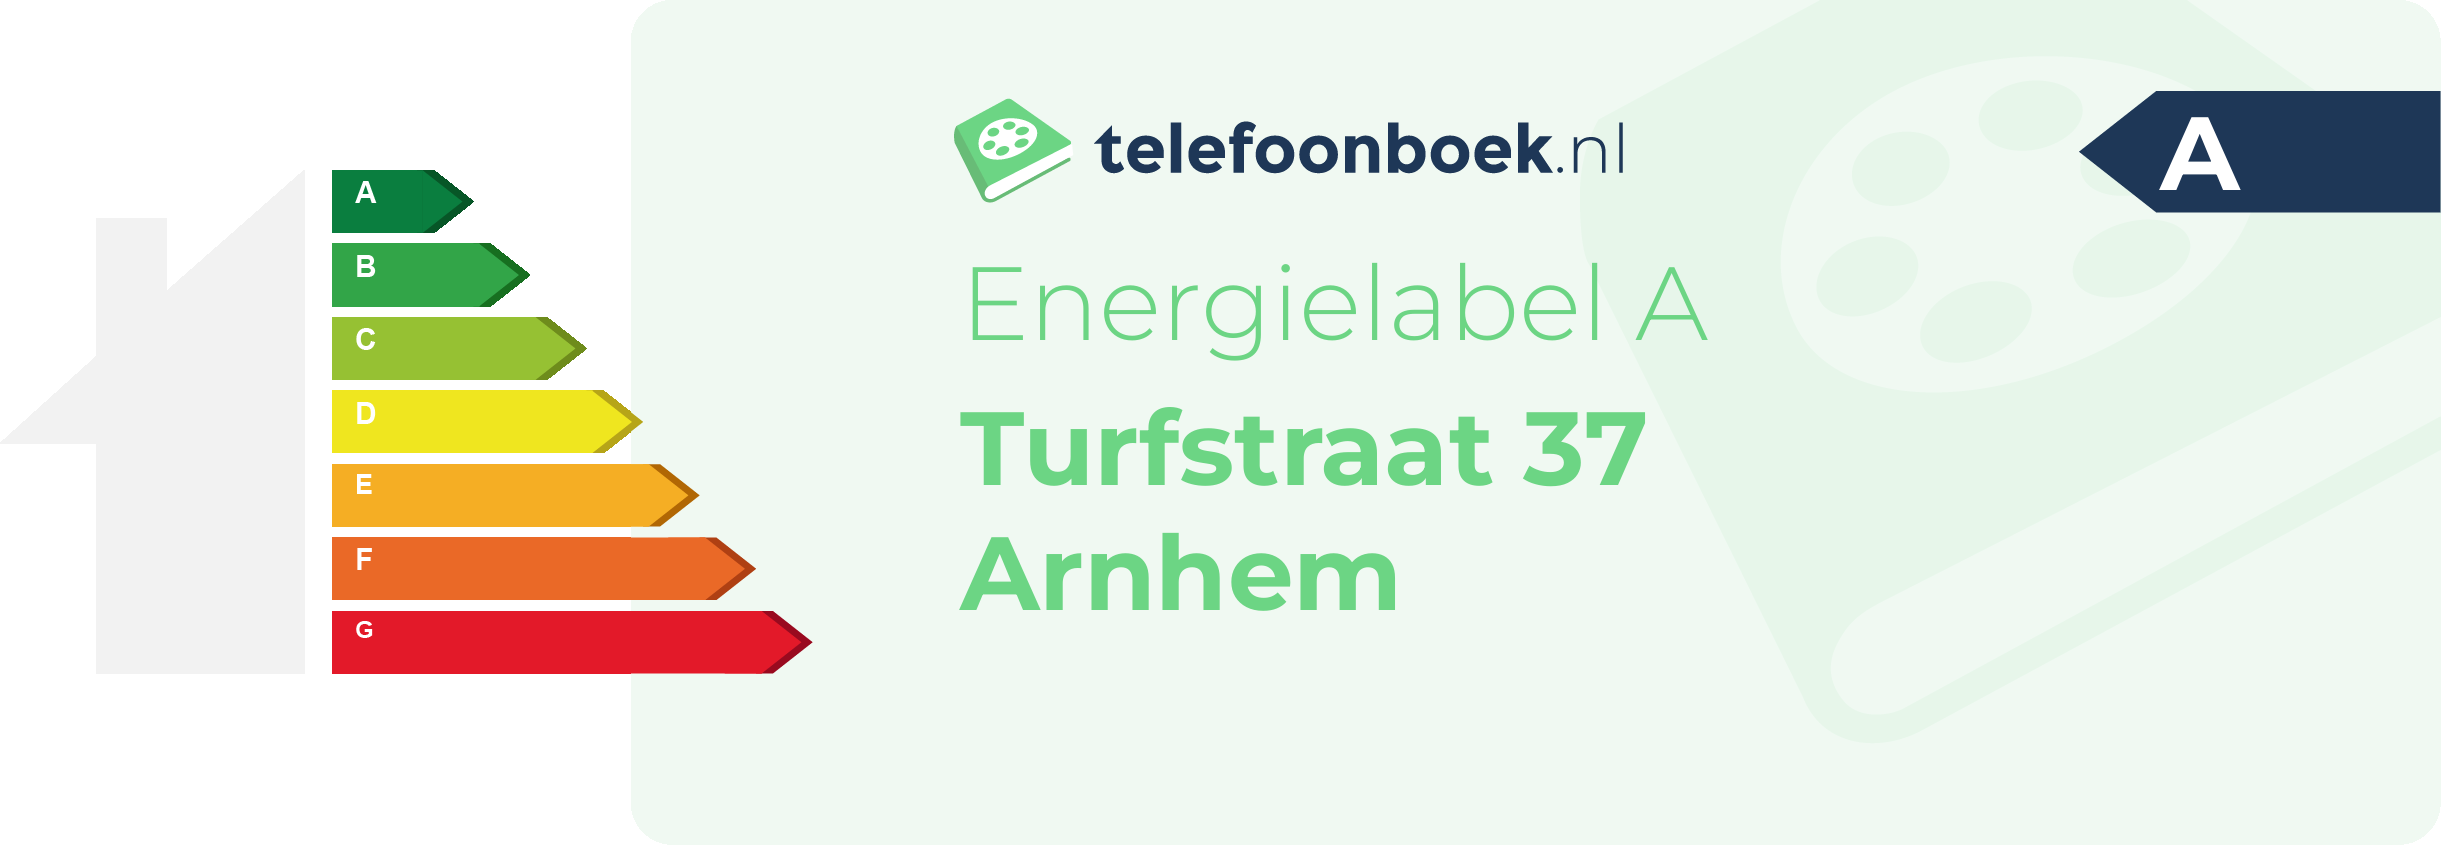 Energielabel Turfstraat 37 Arnhem